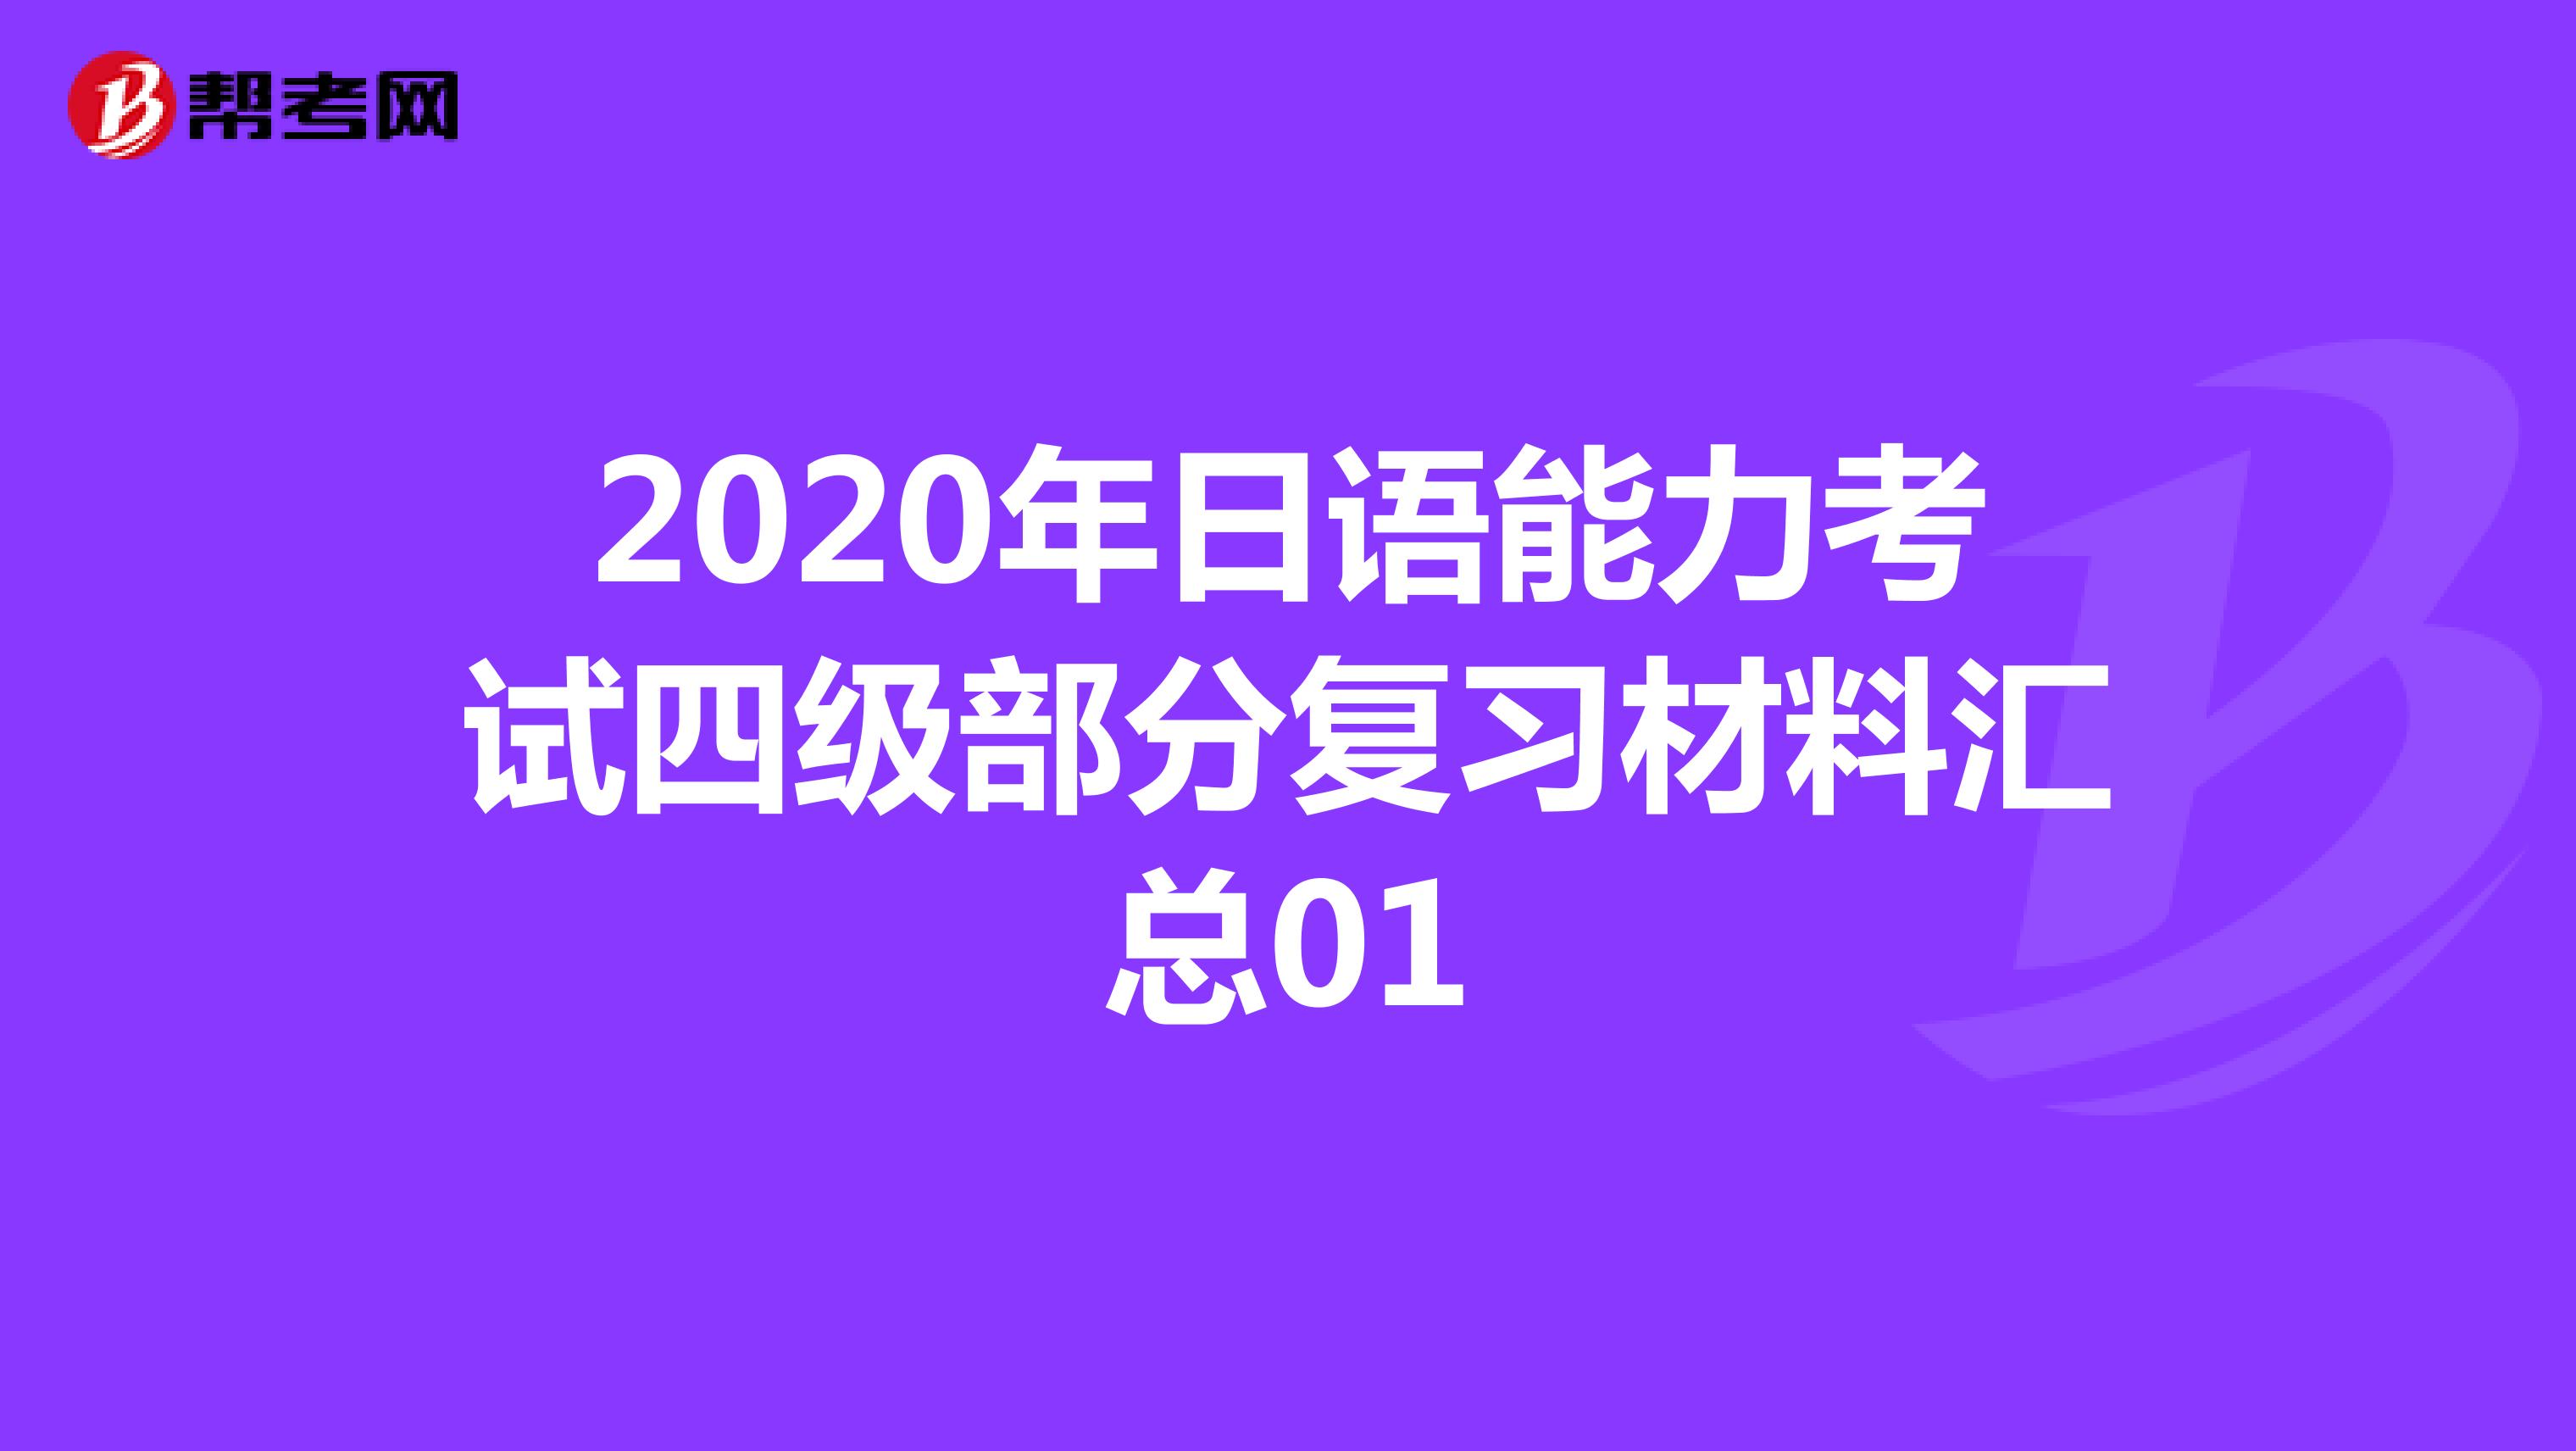 2020年日语能力考试四级部分复习材料汇总01